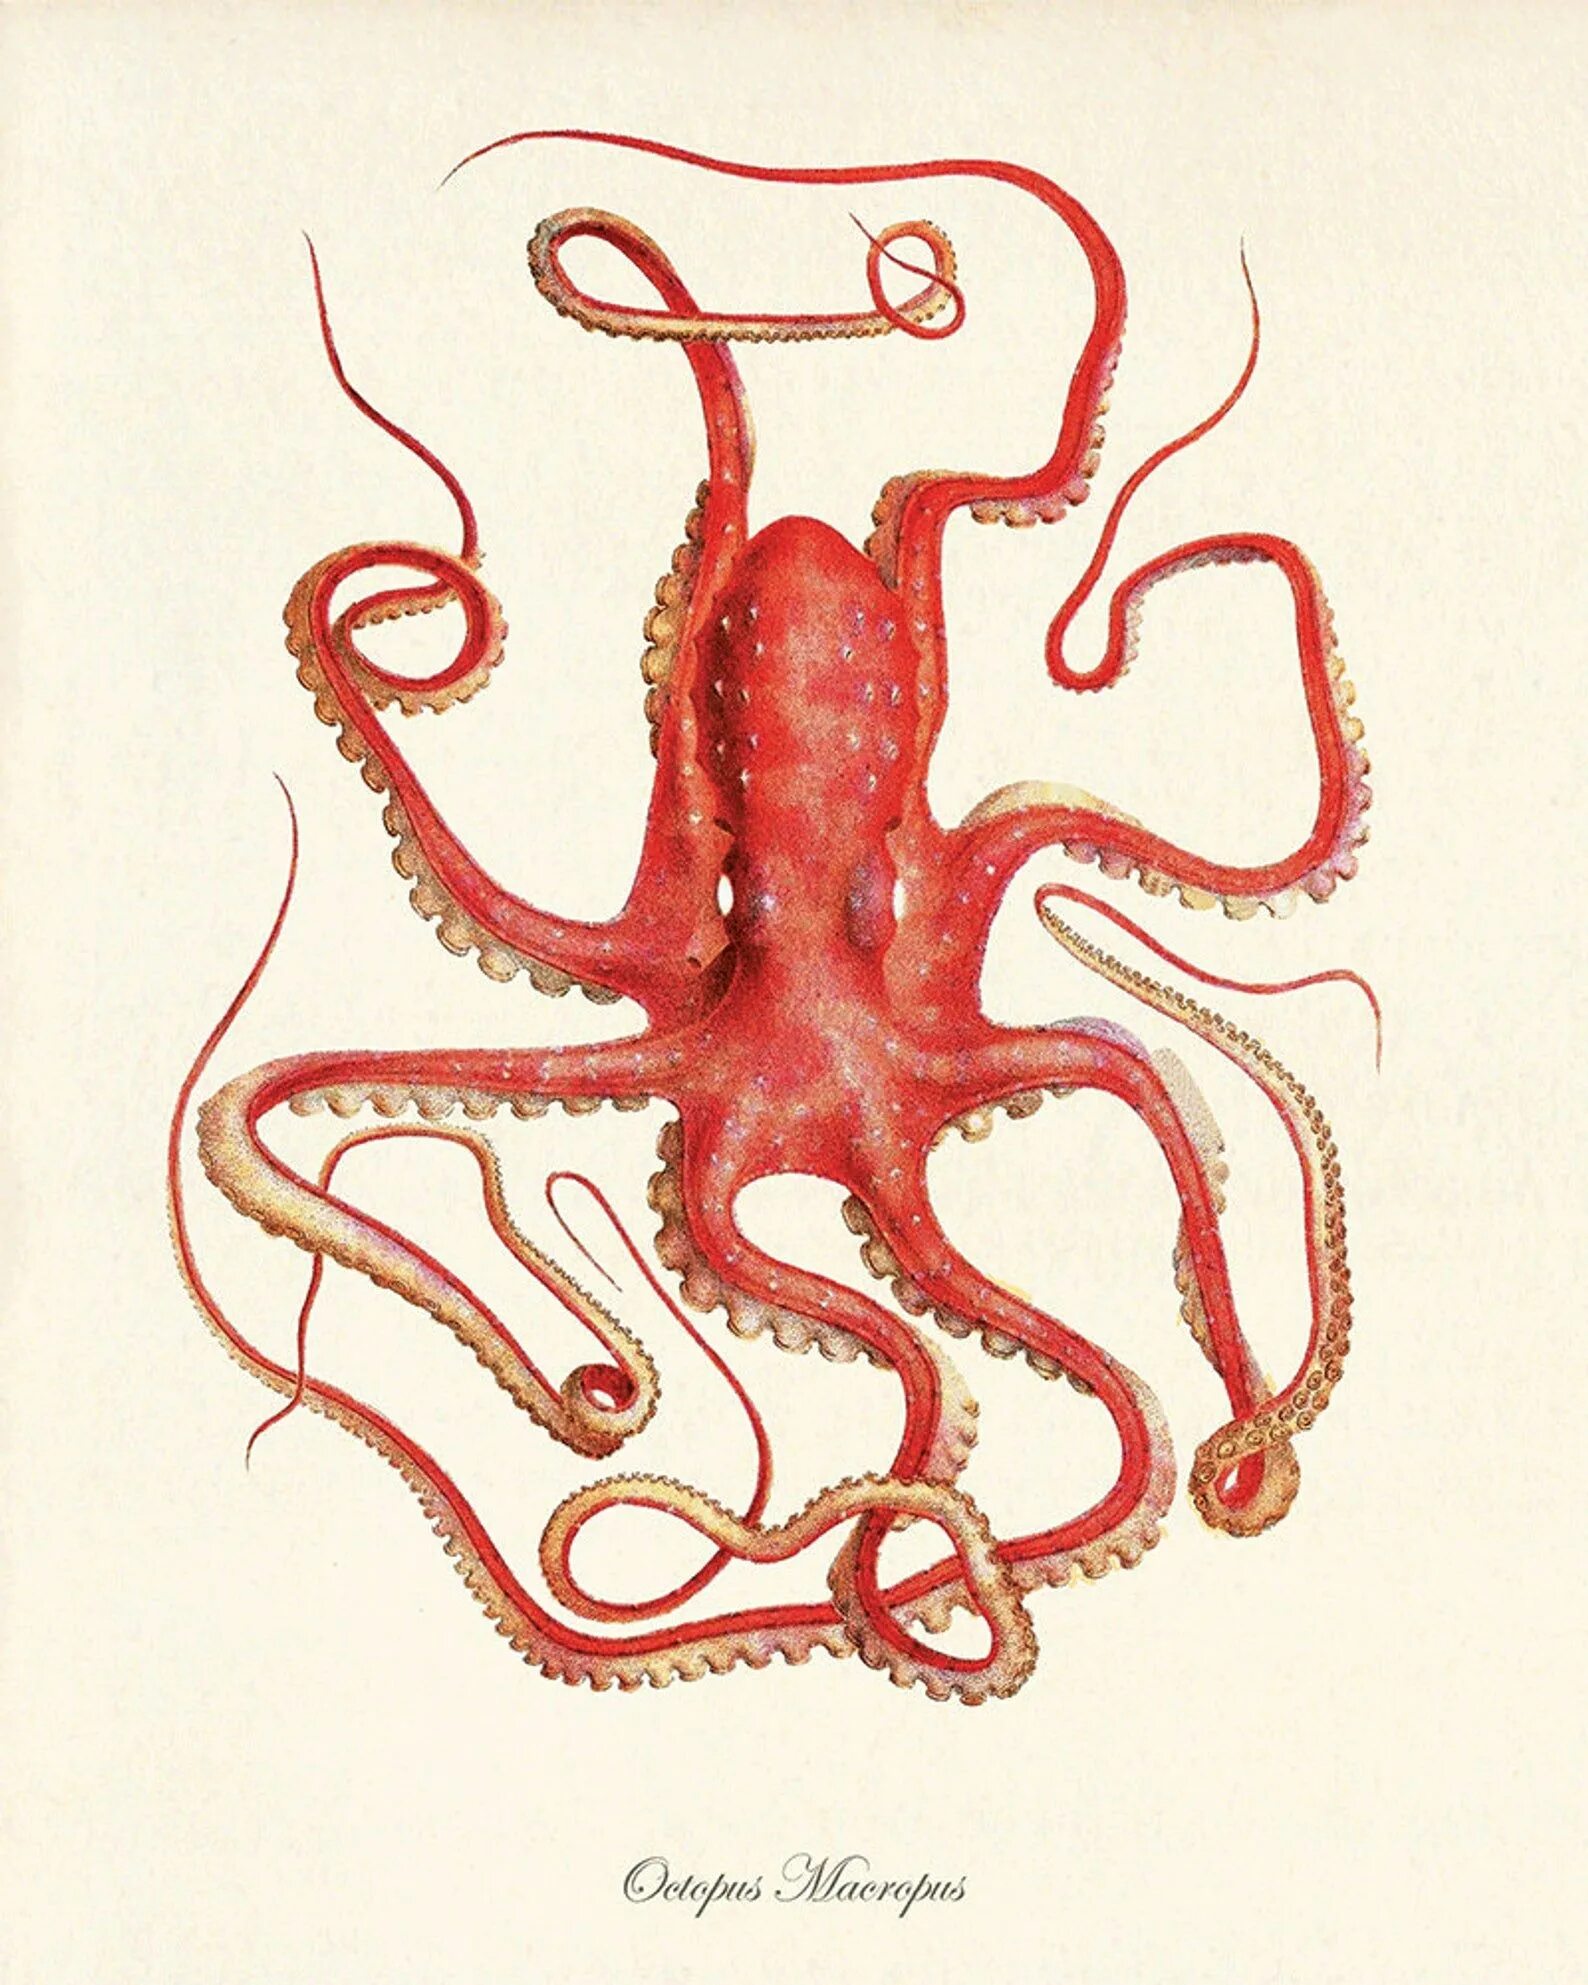 Октопус Макропус. Осьминог иллюстрация. Осьминог Макропус.